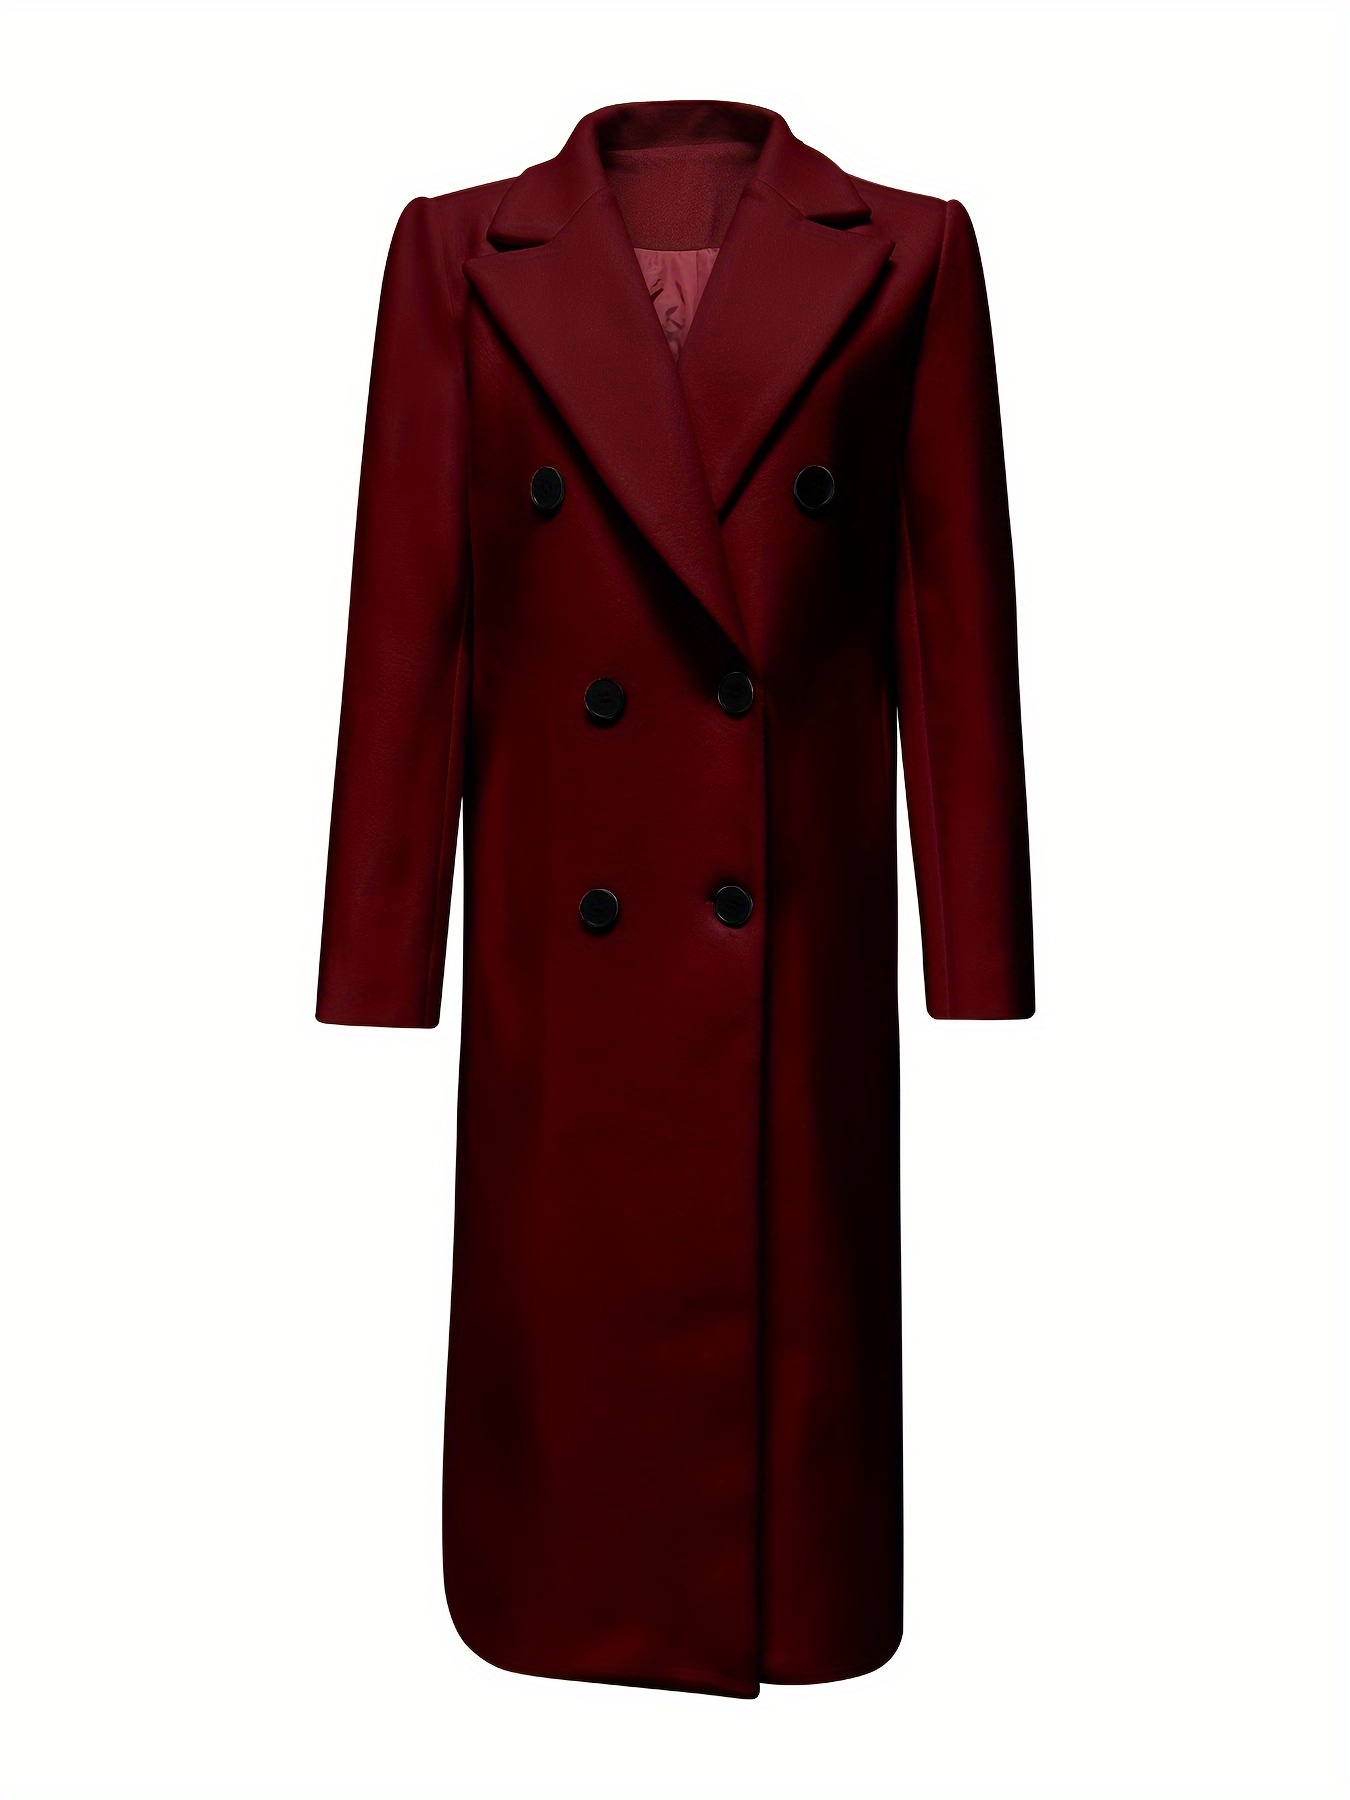 Women Trench Coat Winter Warm Lapel Long Jacket Casual Overcoat Outwear  Casual